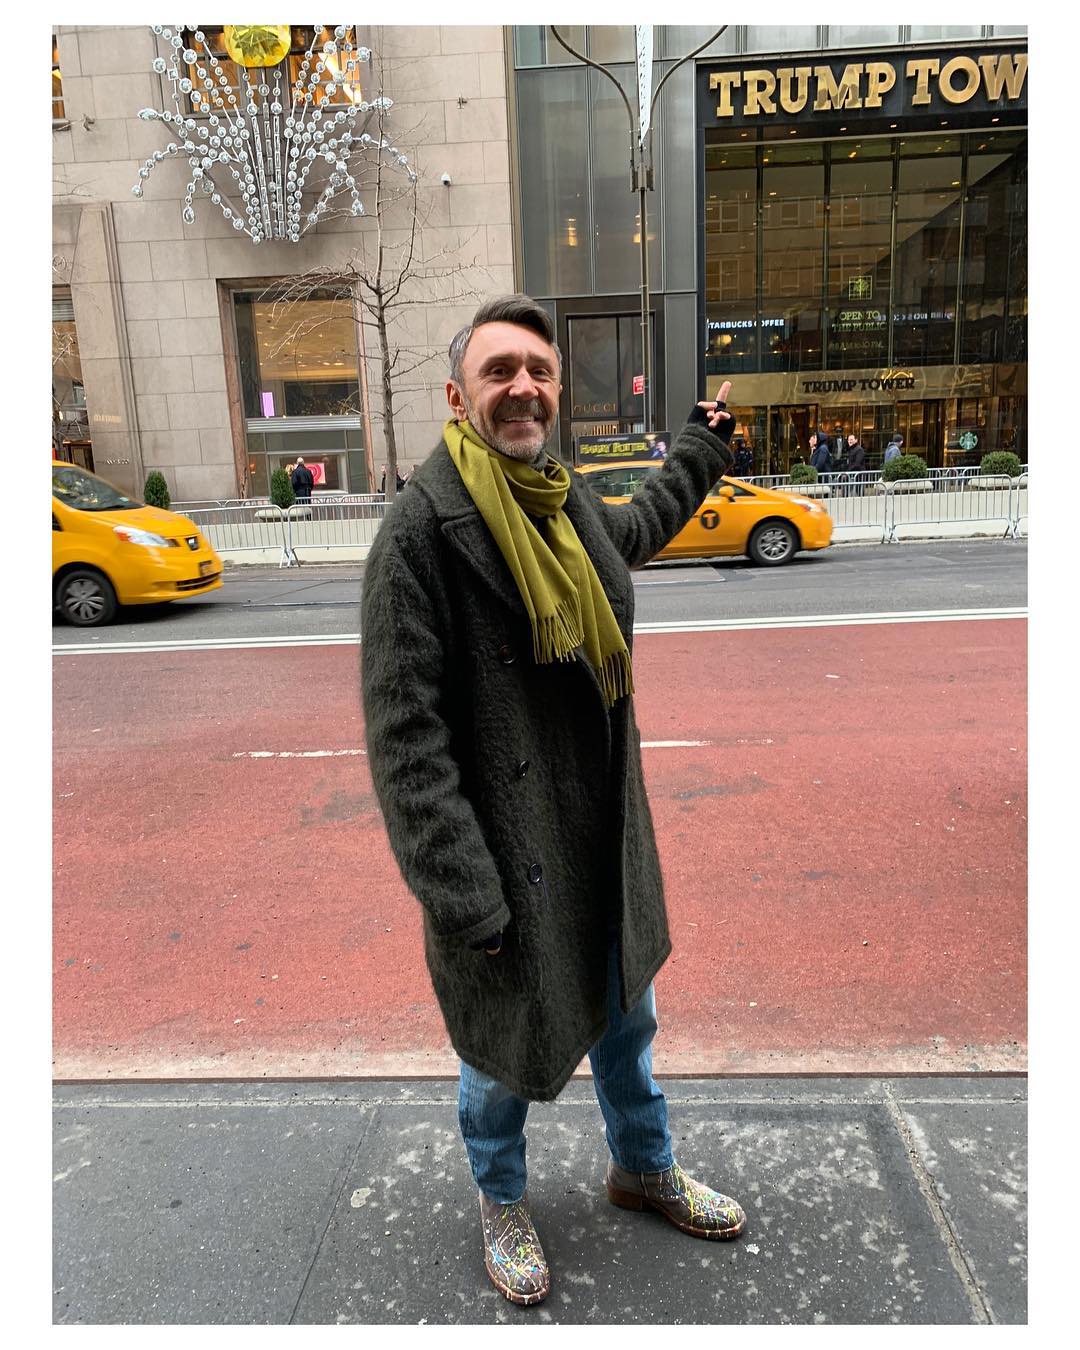 Сергей Шнуров в пальто в Нью-Йорке на фоне здания Trump Tower. 2019 год